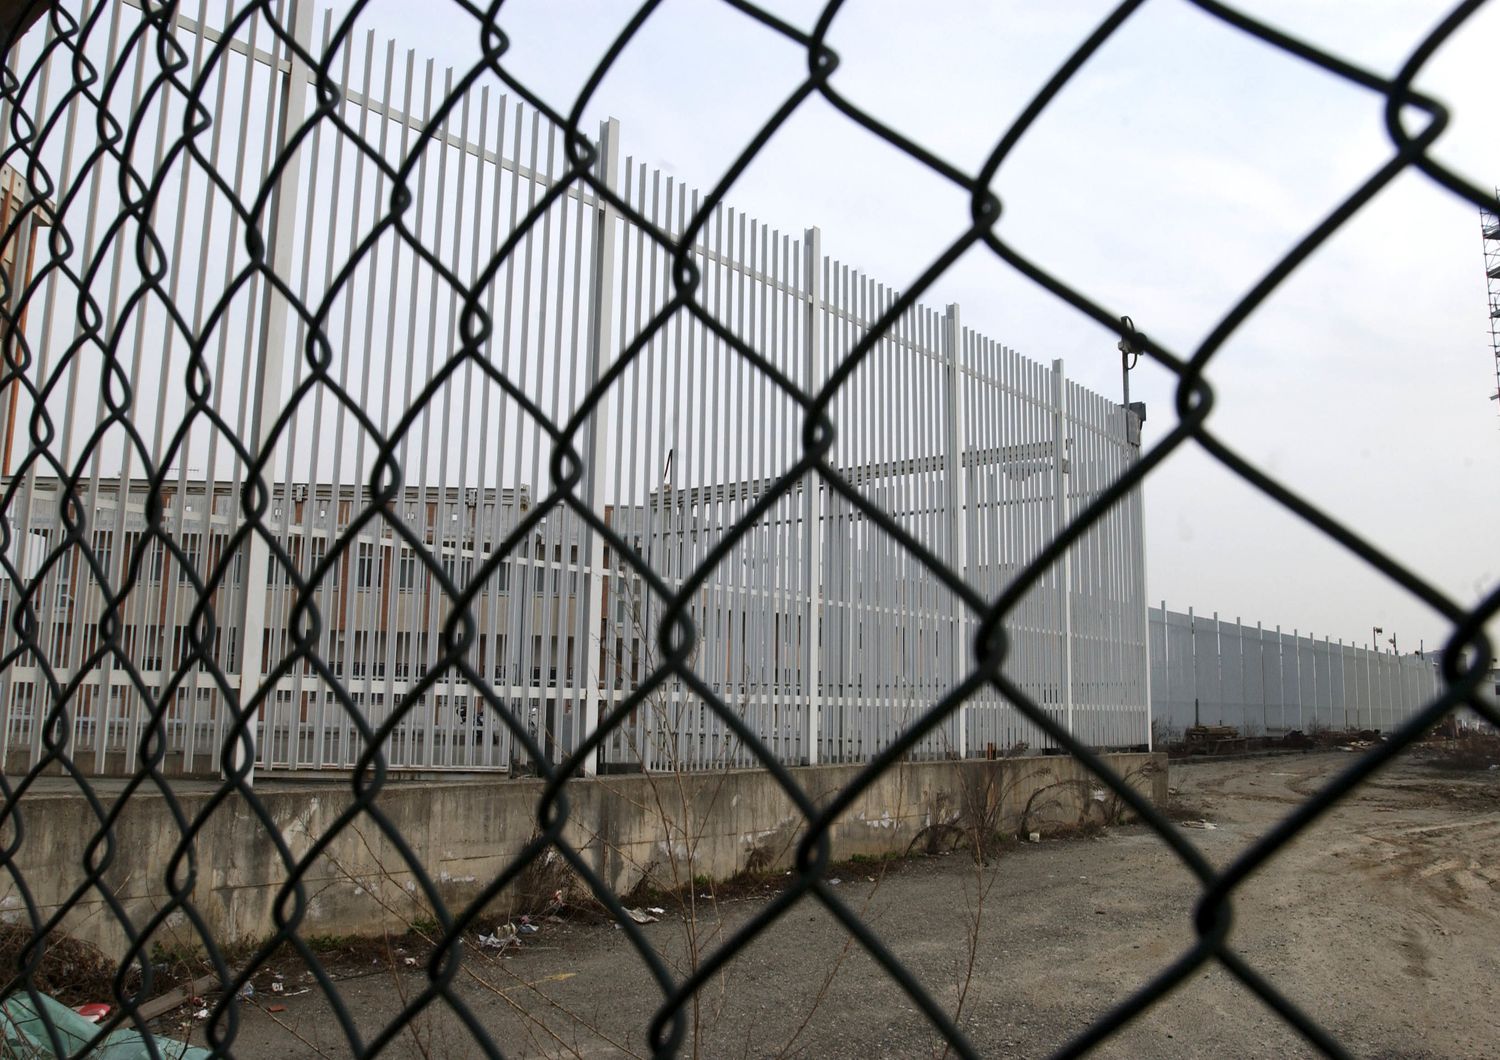 detenuta nigeriana si lascia morire fame carcere Torino ultime notizie